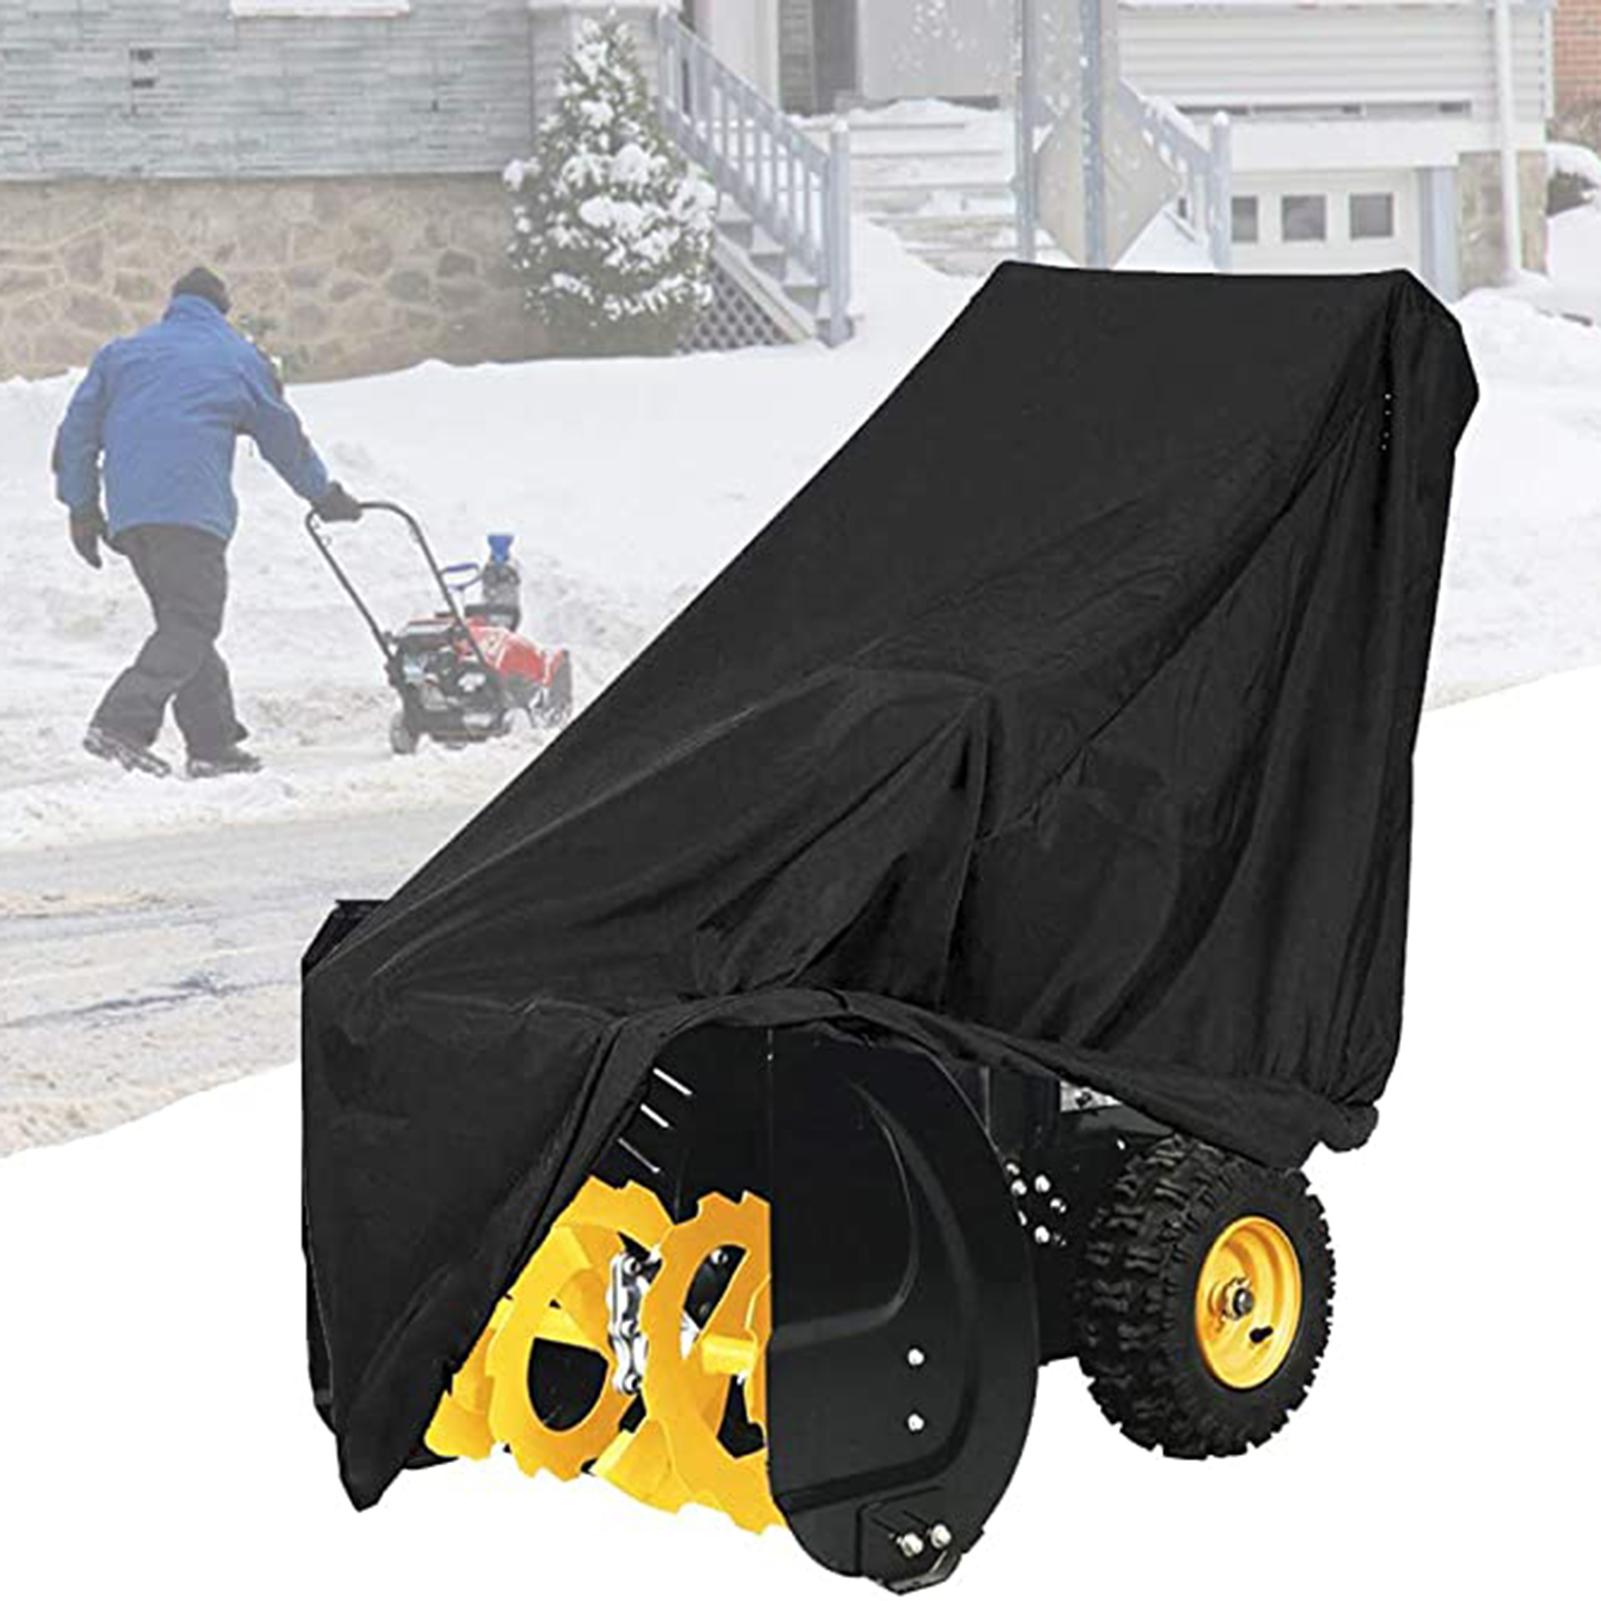 Outdoor Waterdicht Stofdicht Zonnescherm Sneeuwruimer Blower Cover Protector Anti Uv Covers Zwarte Sneeuw Blowers Covers